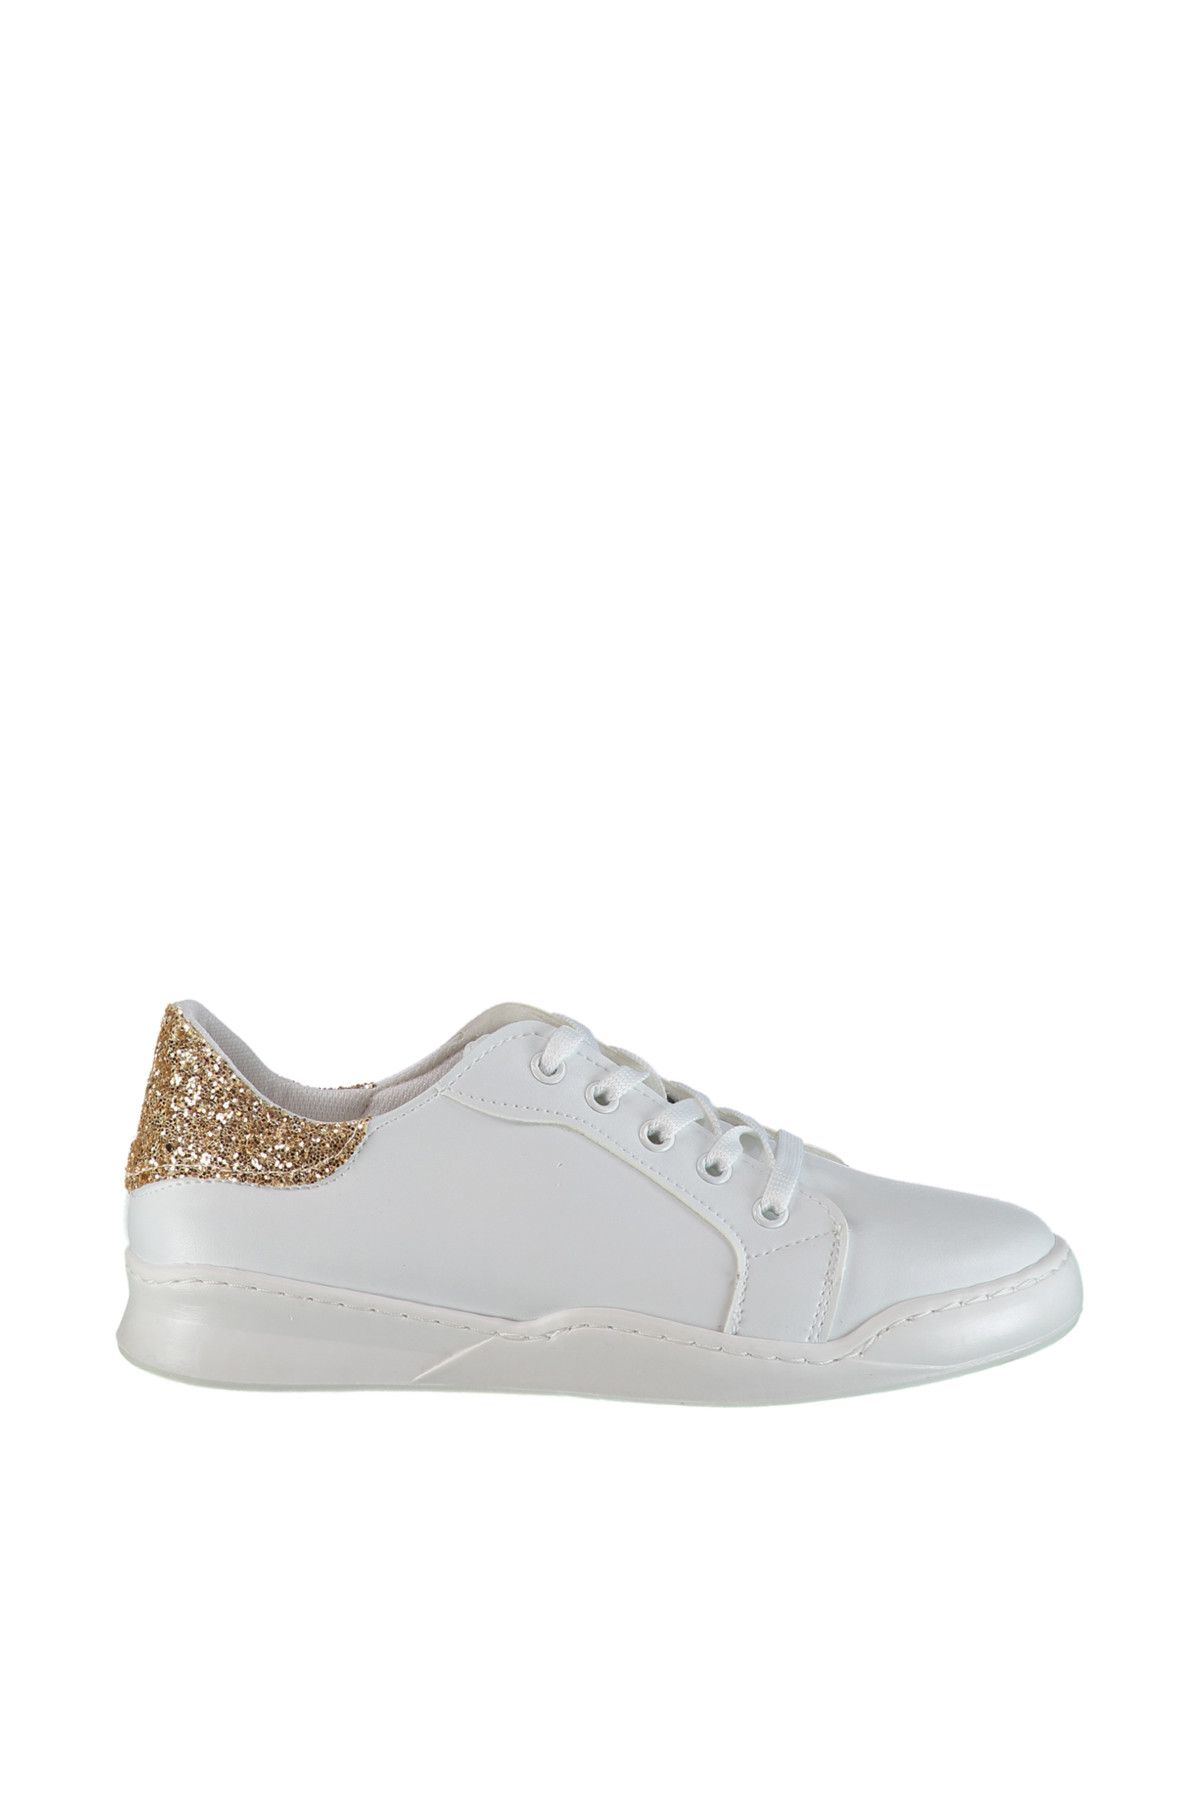 SOHO Beyaz Altın Sim Kadın Sneaker 8584